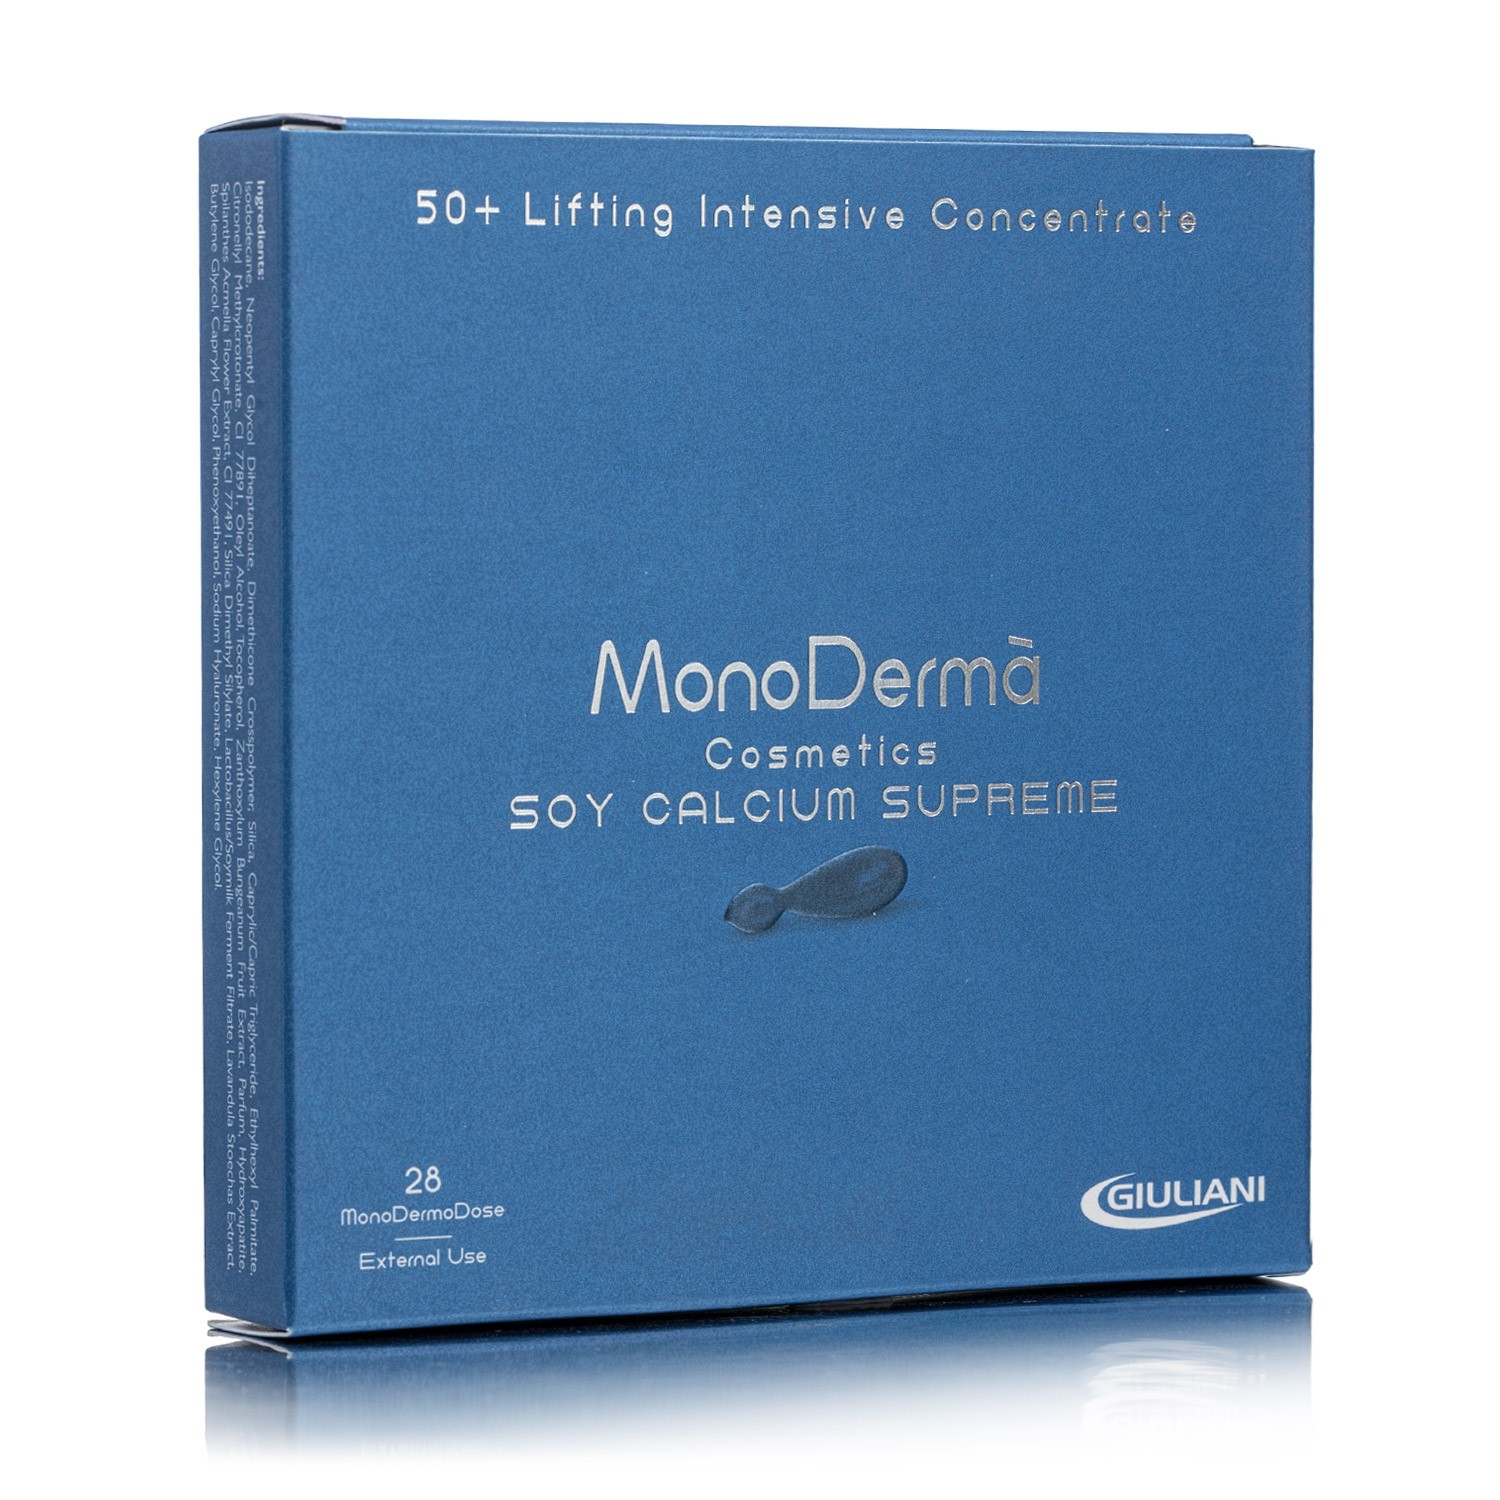 Monoderma Soy Calcium Supreme